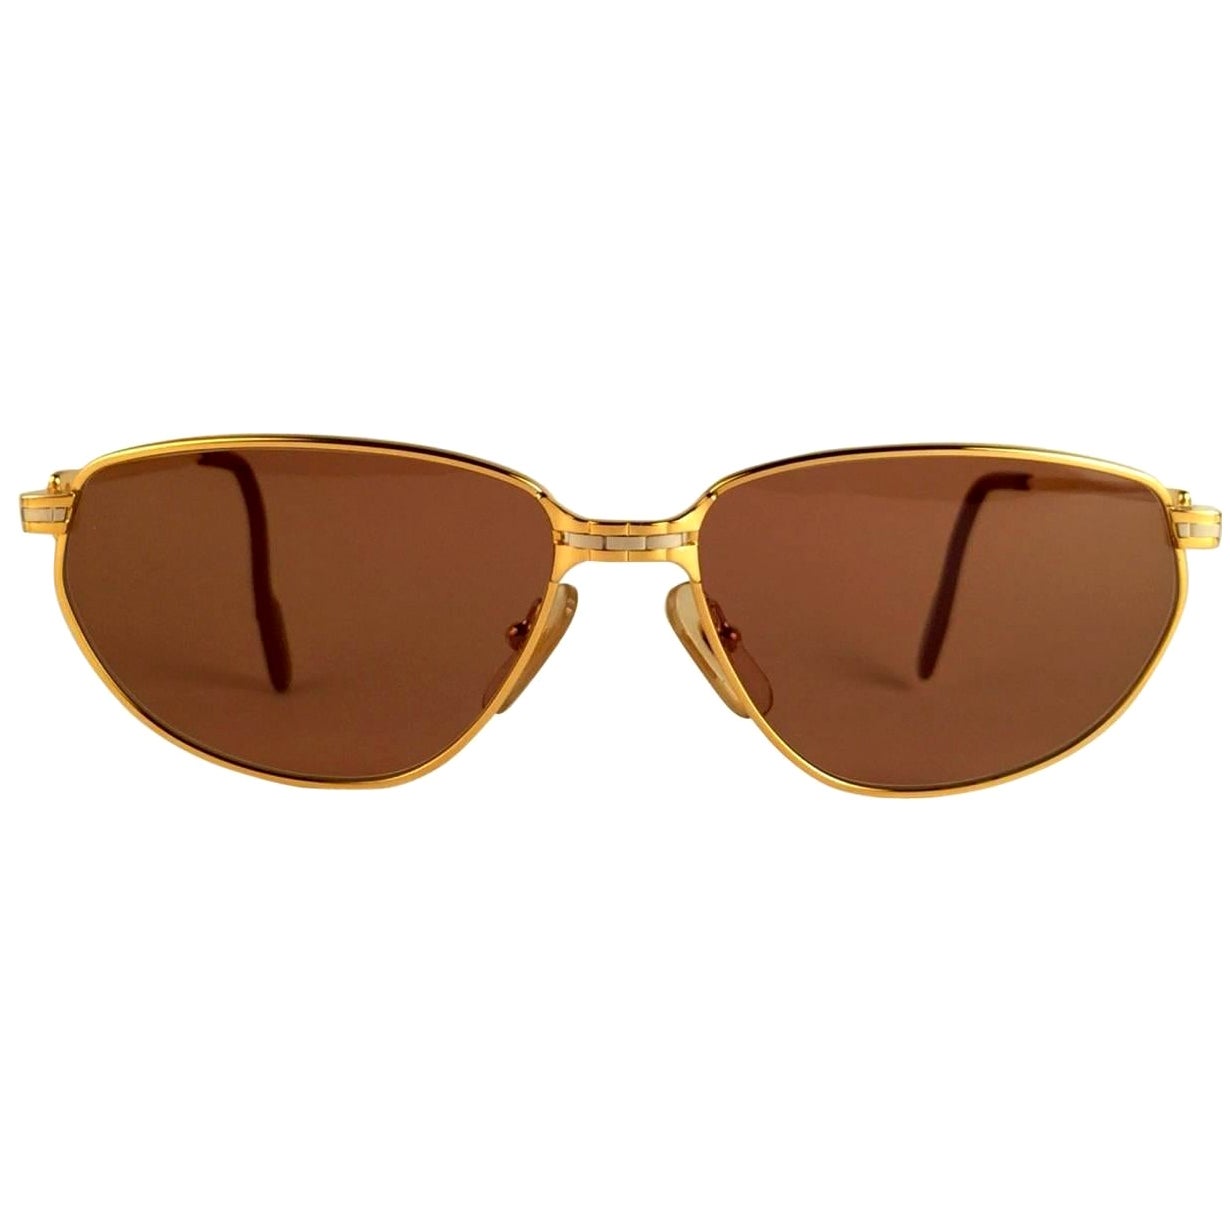 New 1988 Cartier Panthere Windsor Sonnenbrille mit makellosen braunen (UV-Schutz) Gläsern. Die Katzenaugenfassung ist auf der Vorderseite und an den Seiten in Gelb- und Weißgold gehalten. Alle Markenzeichen. Rote Emaille-Ohrstöpsel. 
Beide Arme